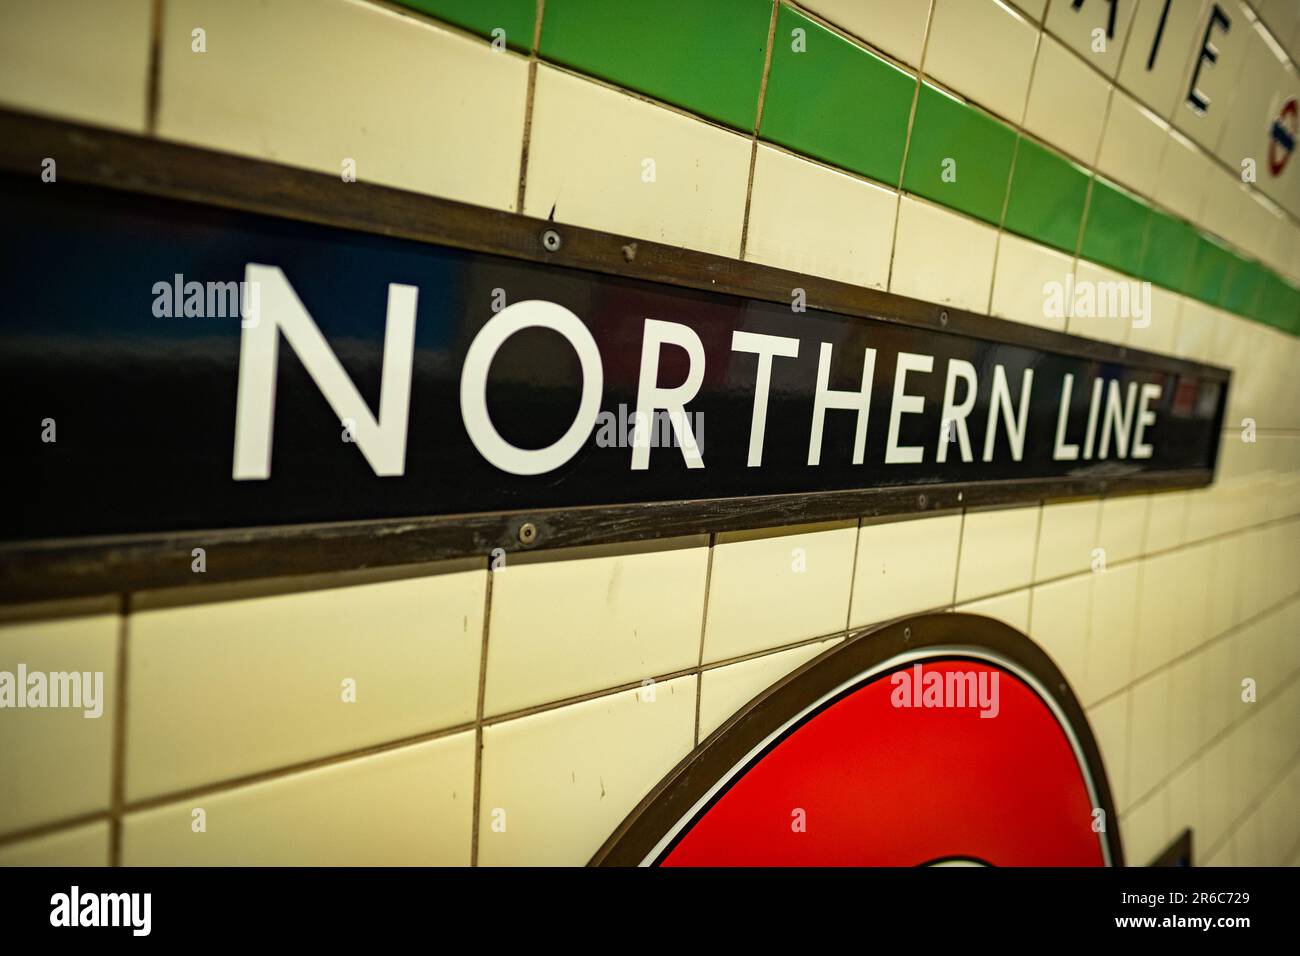 LONDRES - 21 MARS 2023 : panneau Northern Line à la station Highgate, une station de métro dans la région d'Islington, dans le nord de Londres Banque D'Images